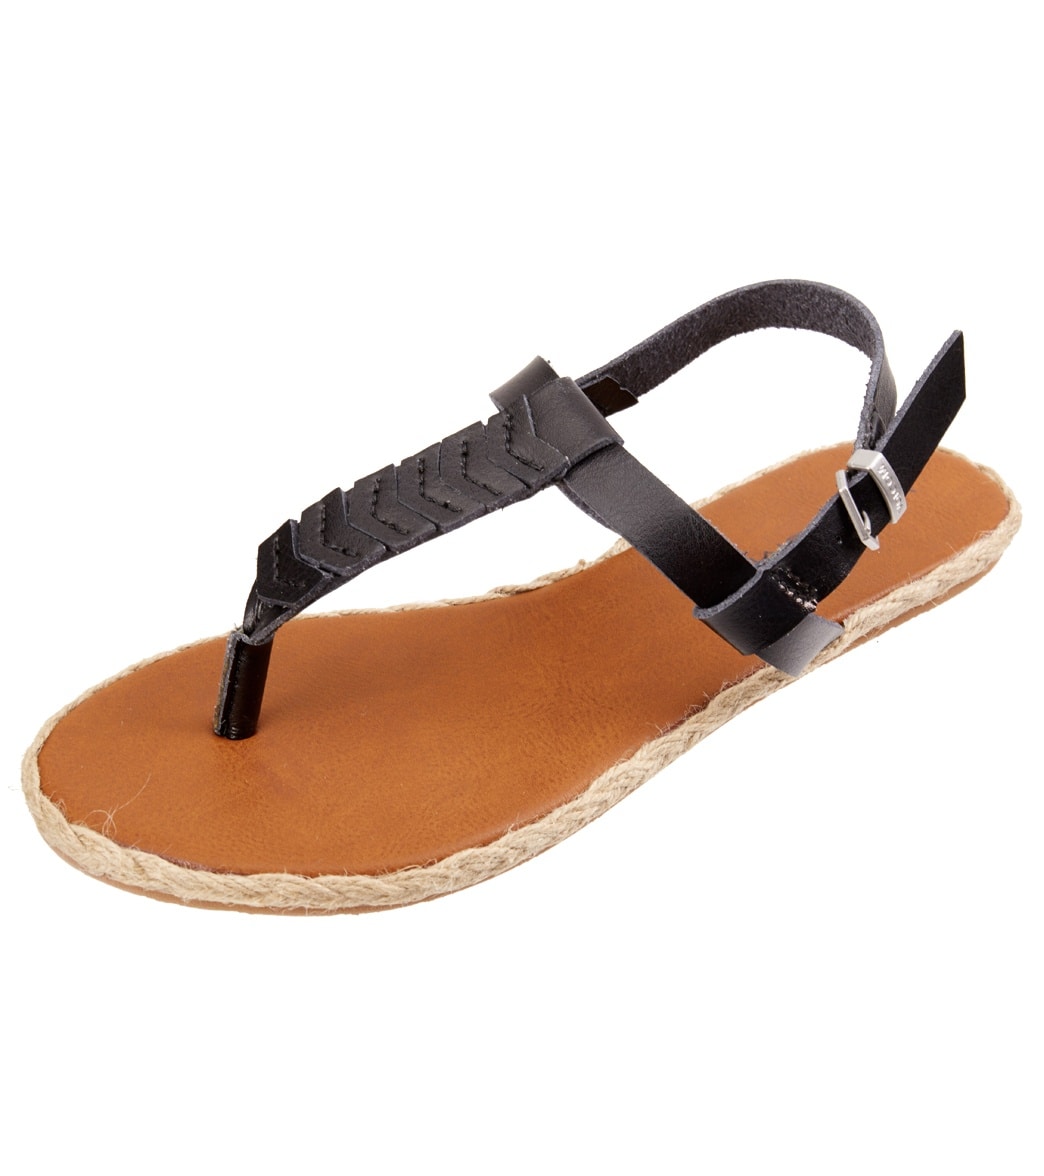 Volcom Women's Trails Sandals - Black 10 Leather/Rubber - Swimoutlet.com